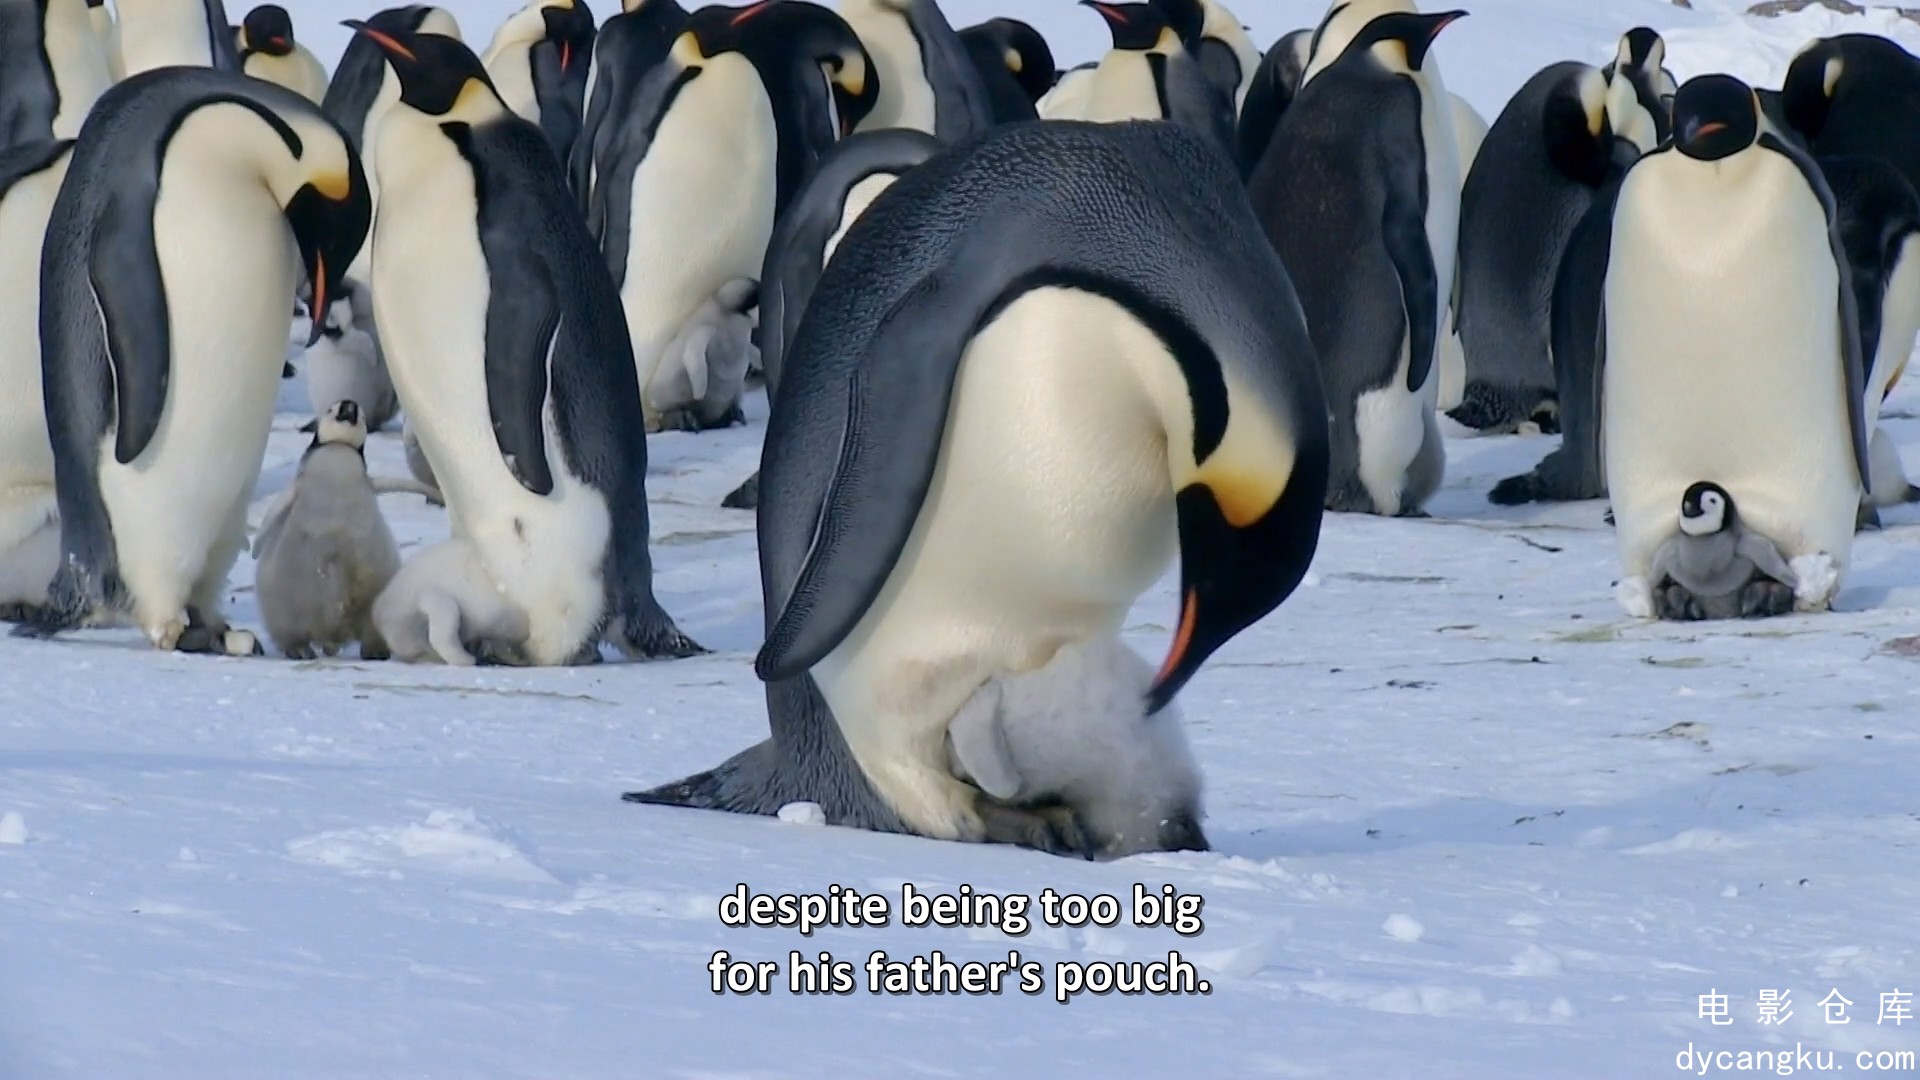 [电影仓库dycangku.com]BBC.Snow.Chick.A.Penguins.Tale.1080p.HDTV.x264.AAC.mkv_sna.jpg